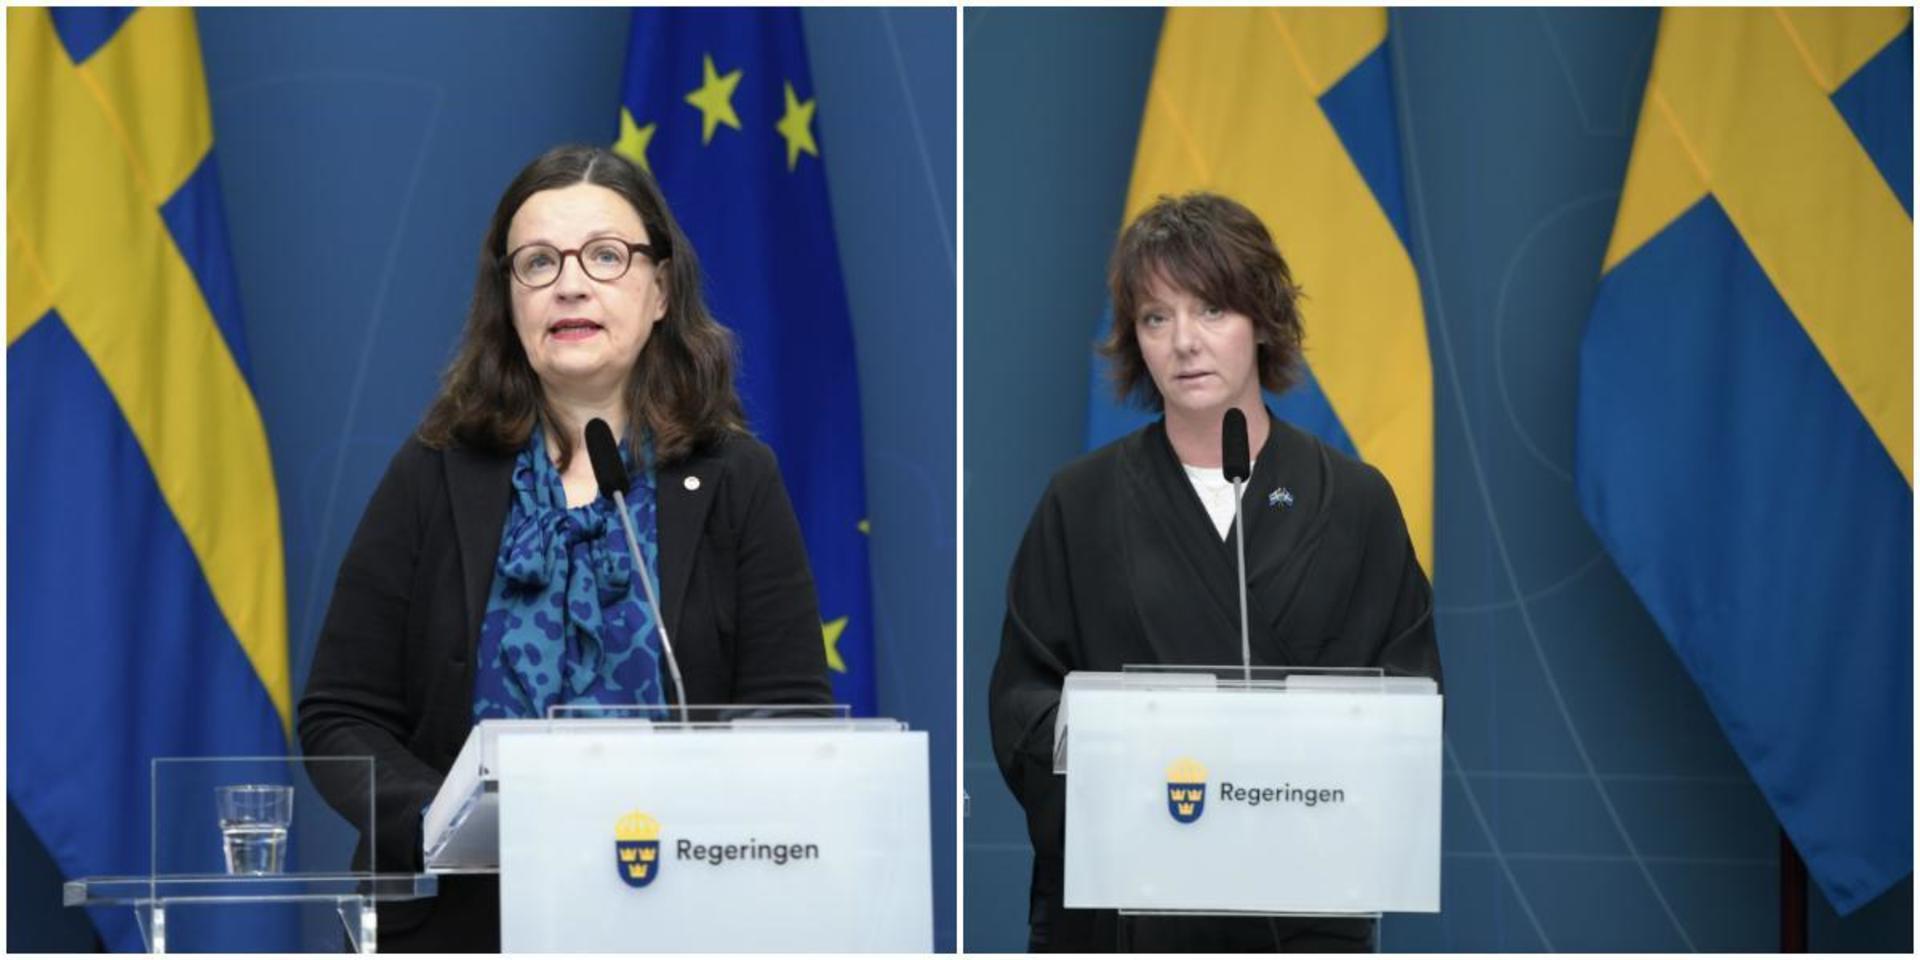 Utbildningsminister Anna Ekström och minister för högre utbildning och forskning Matilda Ernkrans